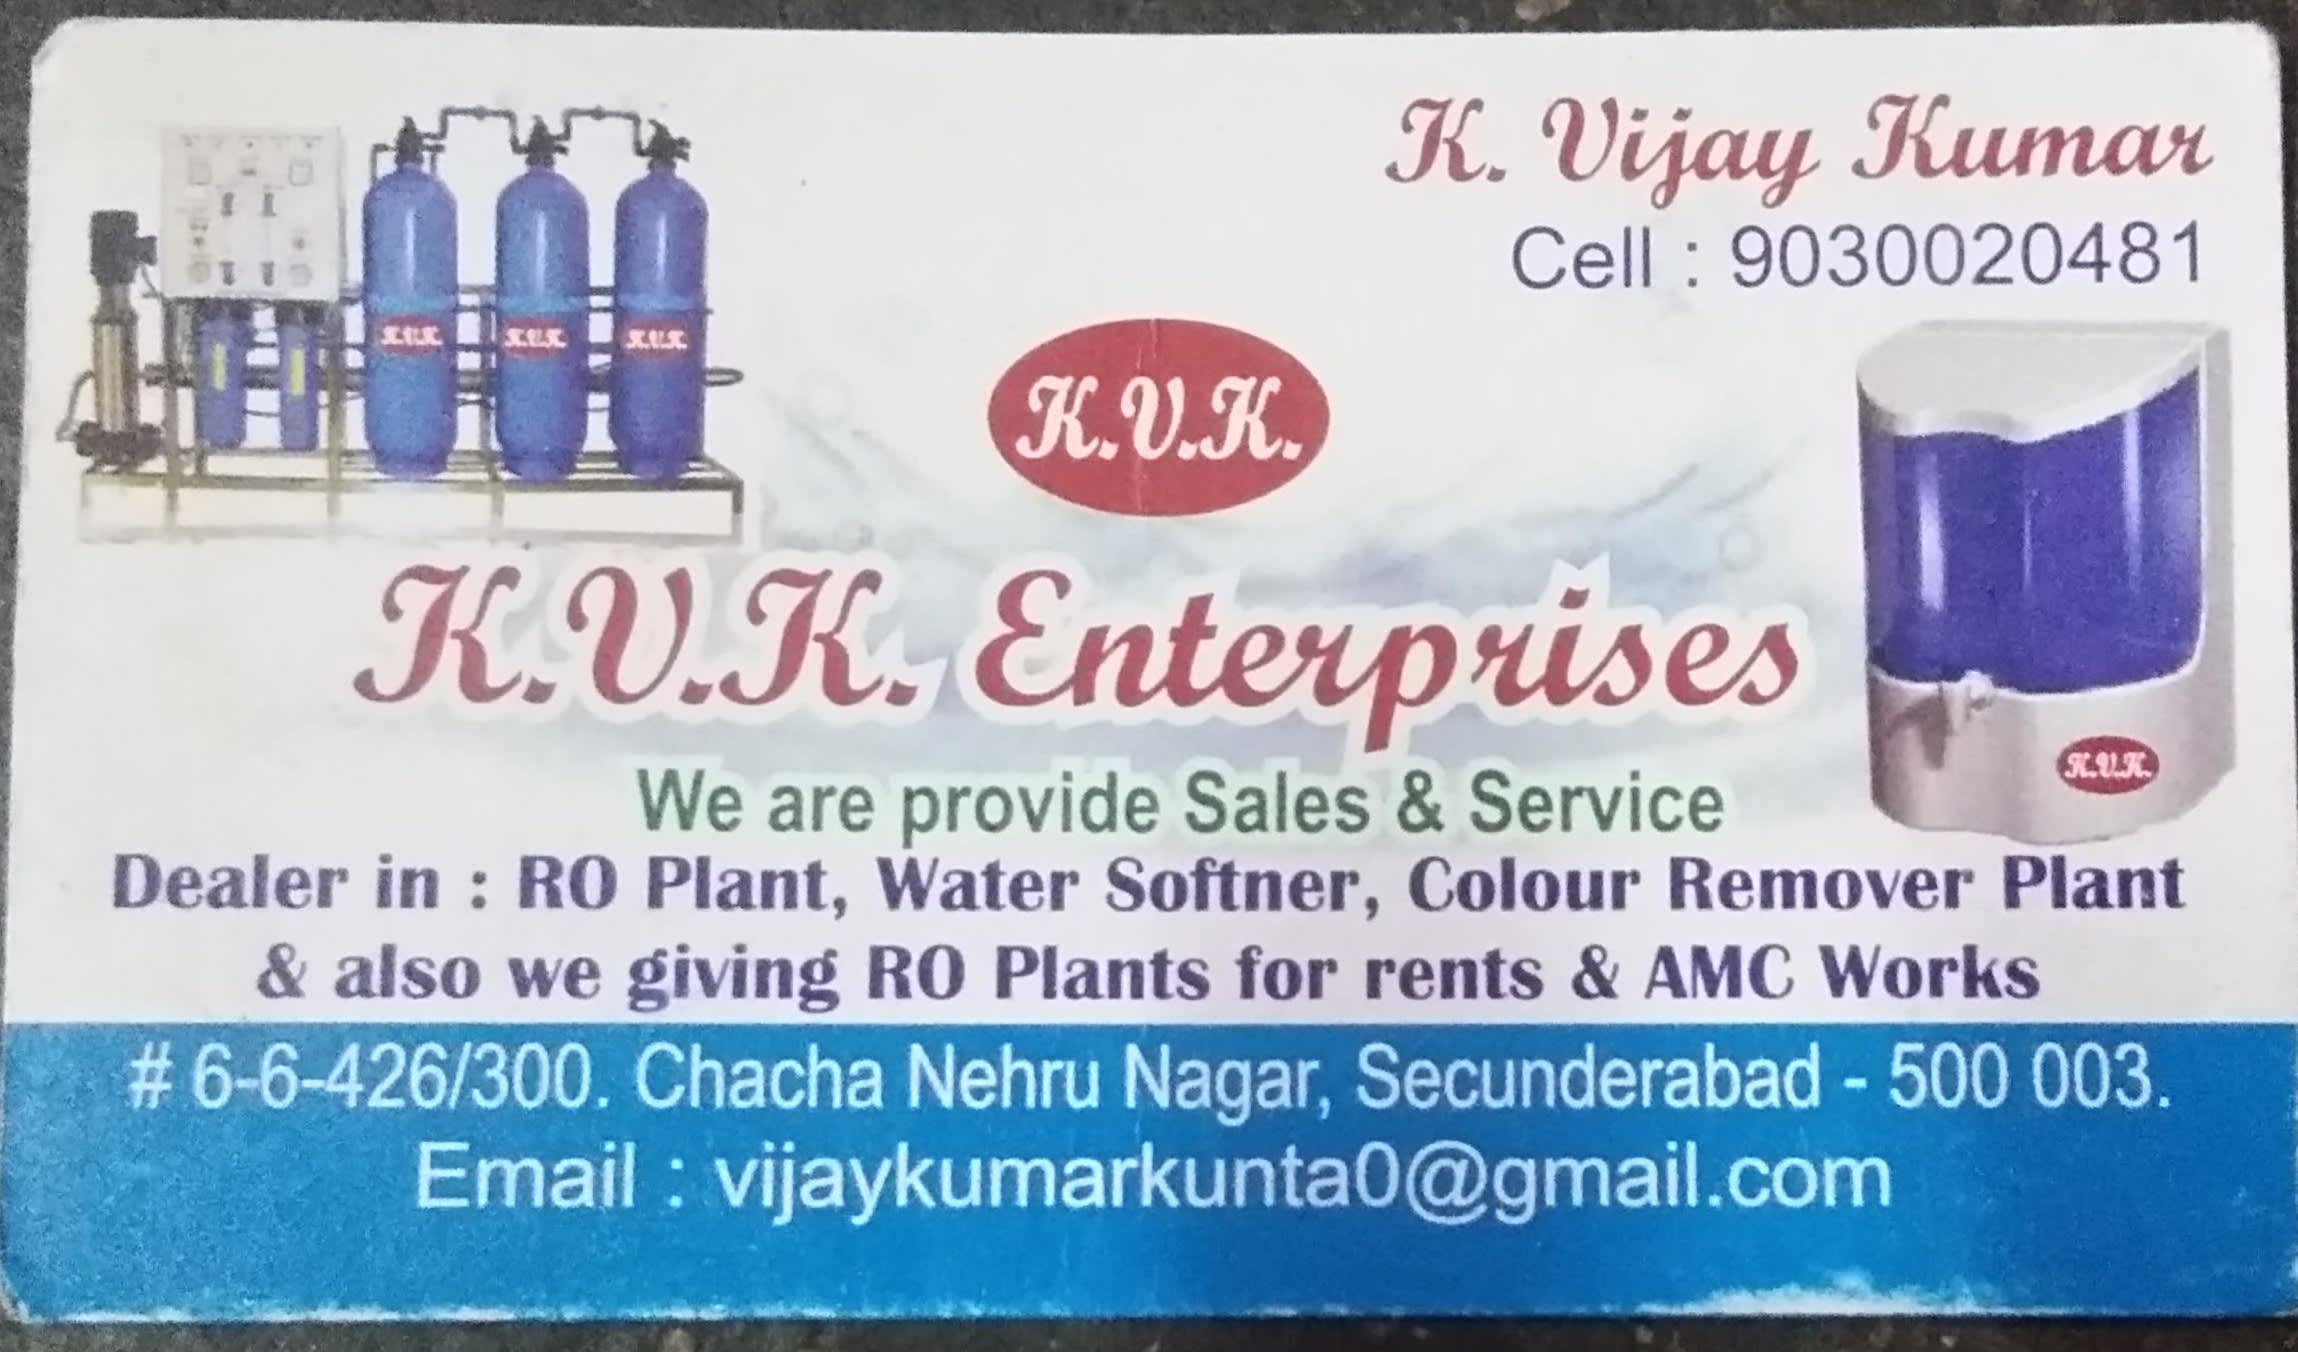 KVK Enterprises